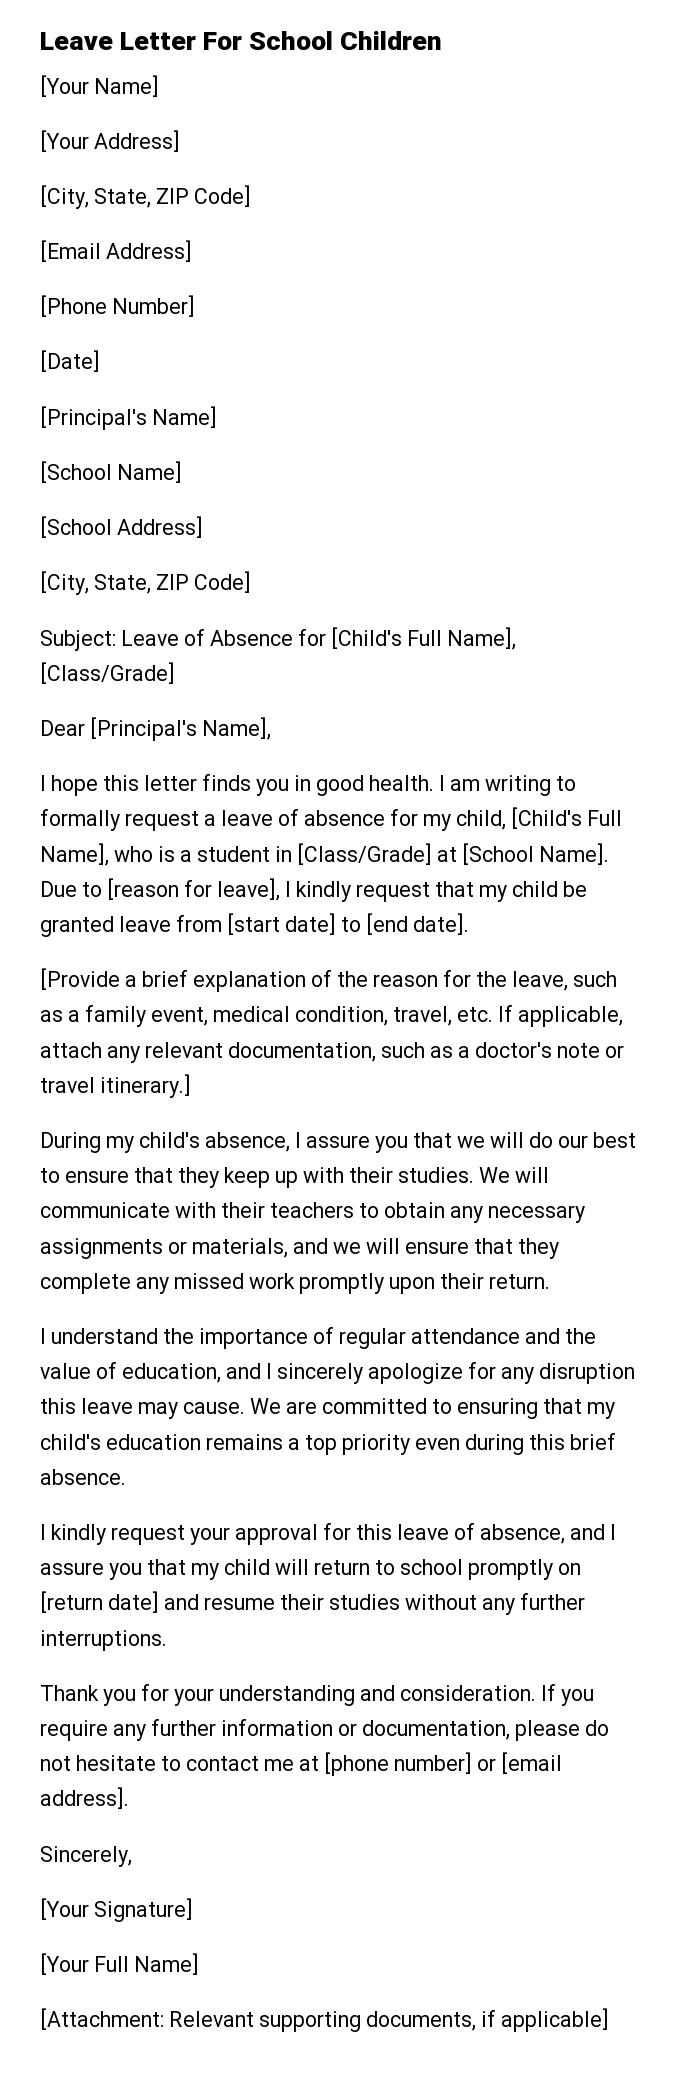 Leave Letter For School Children